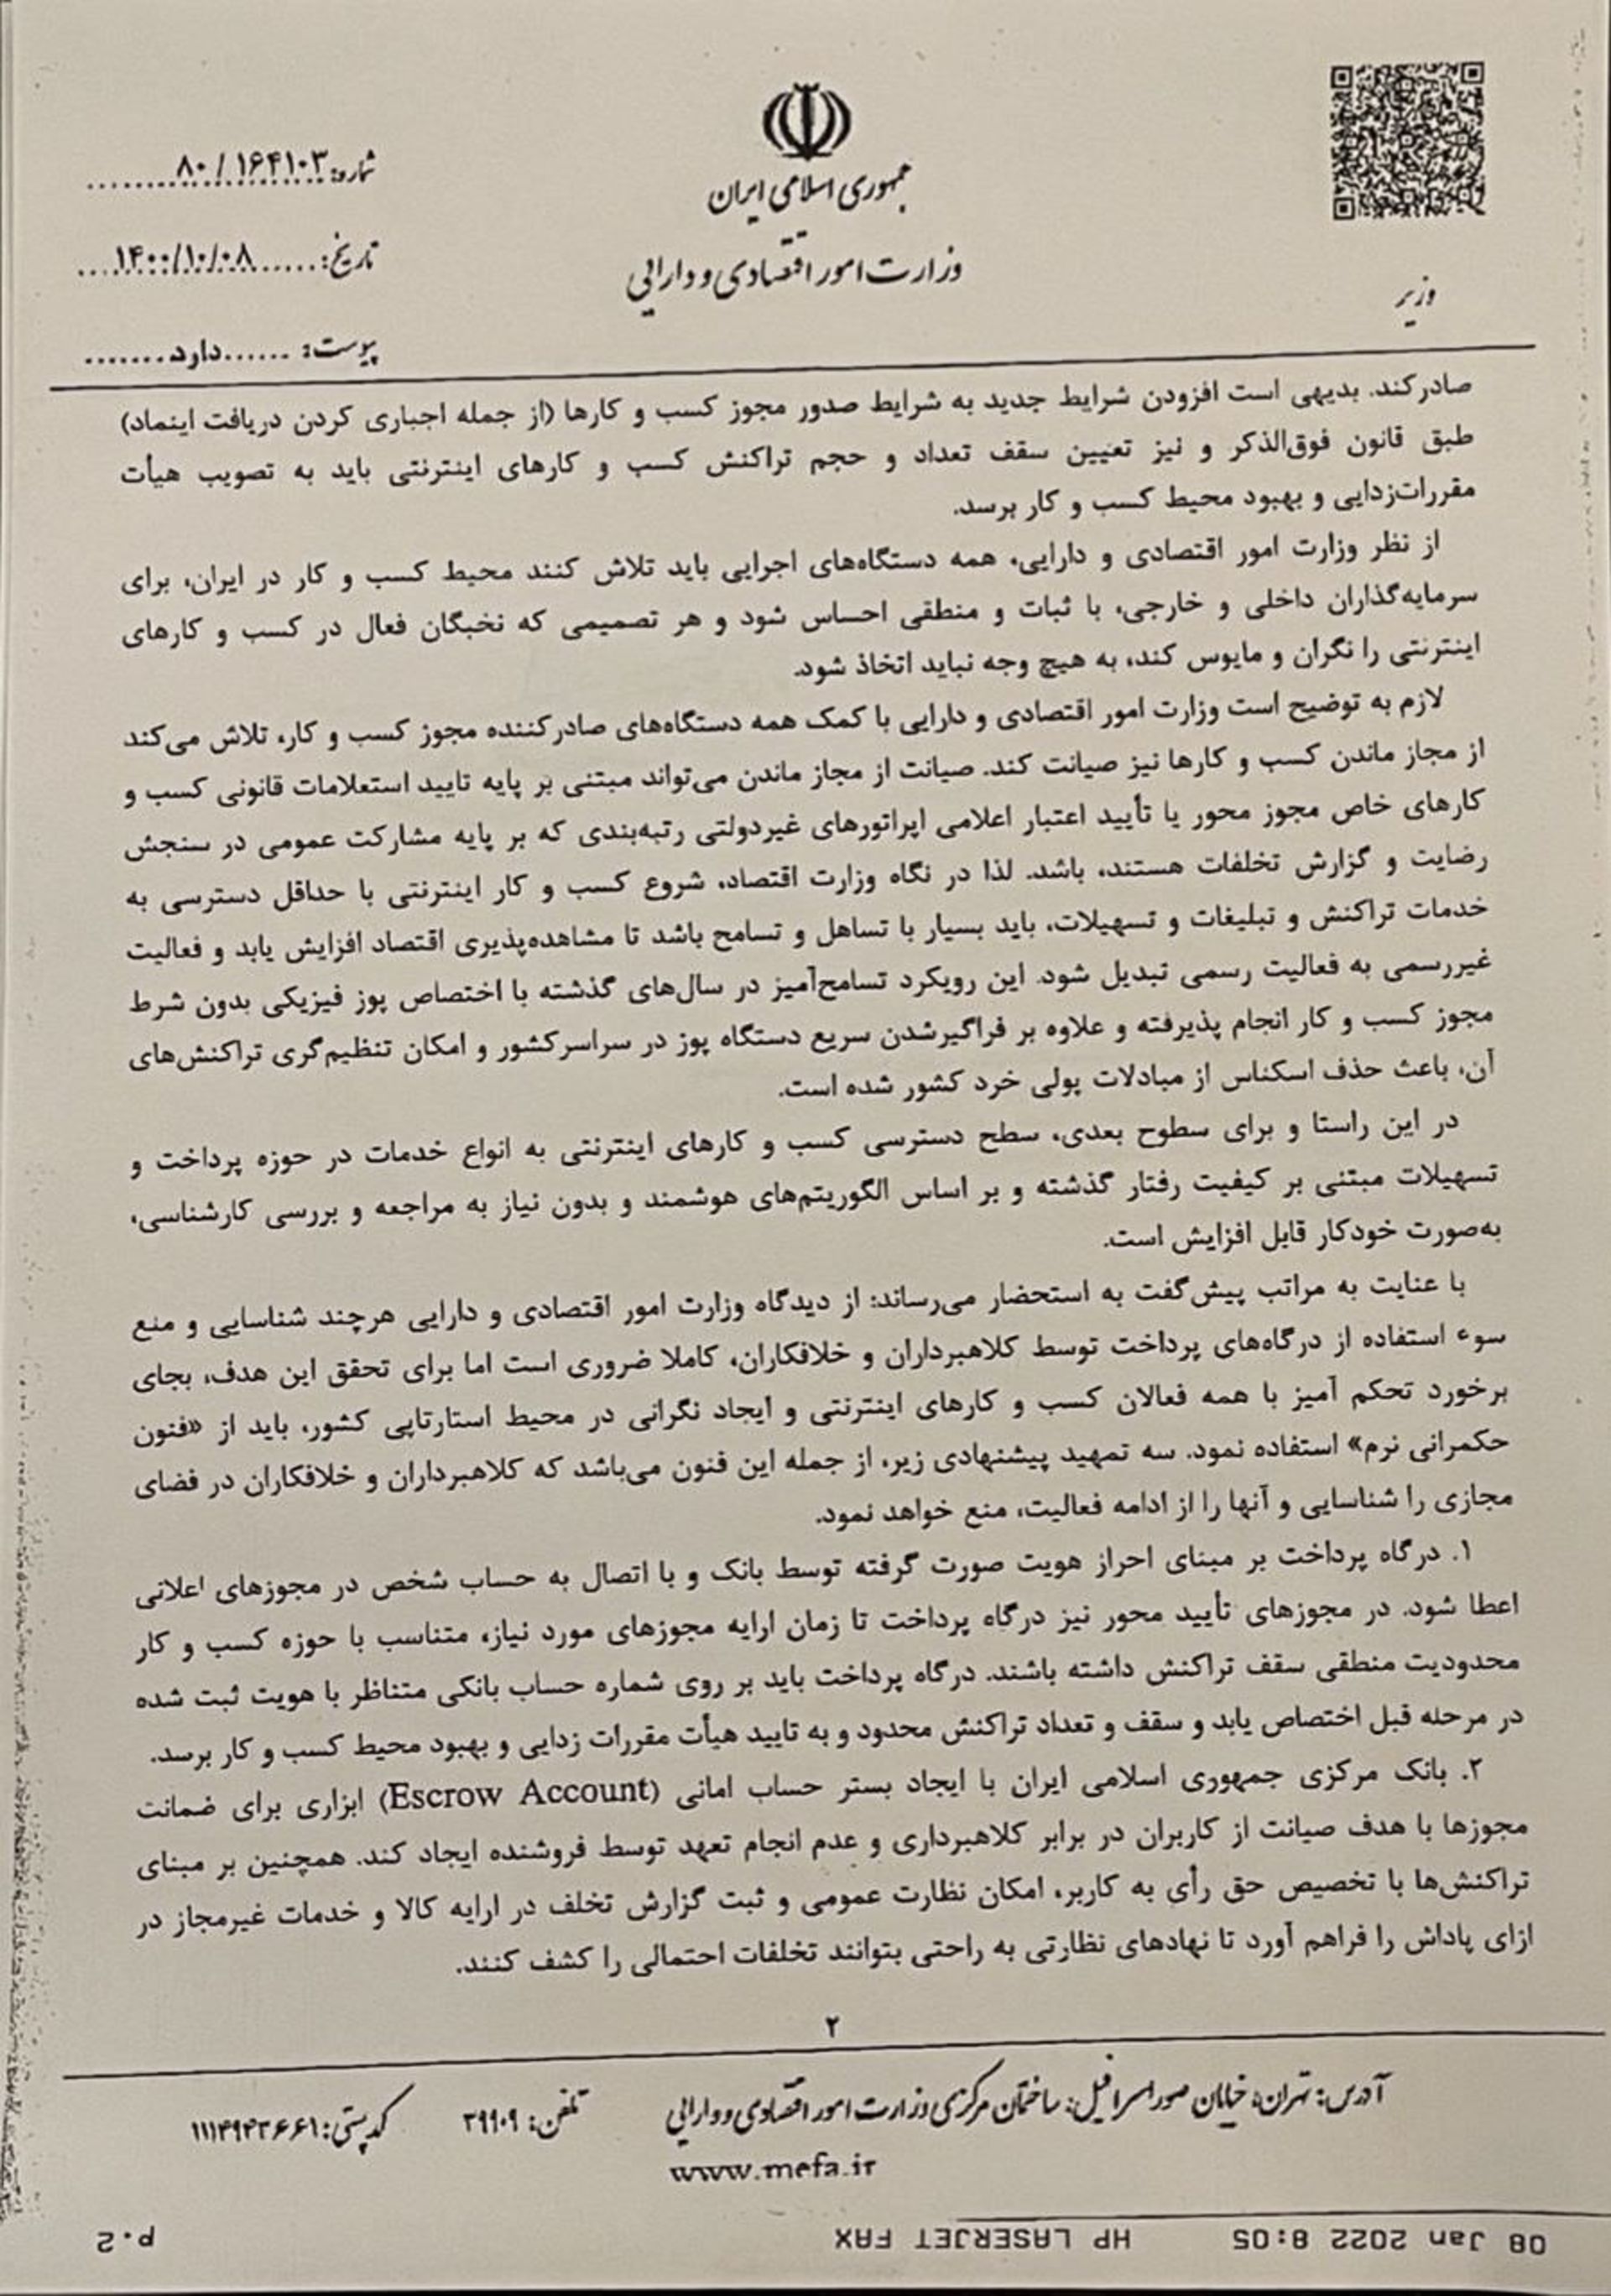 صفحه اول نامه وزیر اقتصاد به مجلس درمورد الزام اینماد